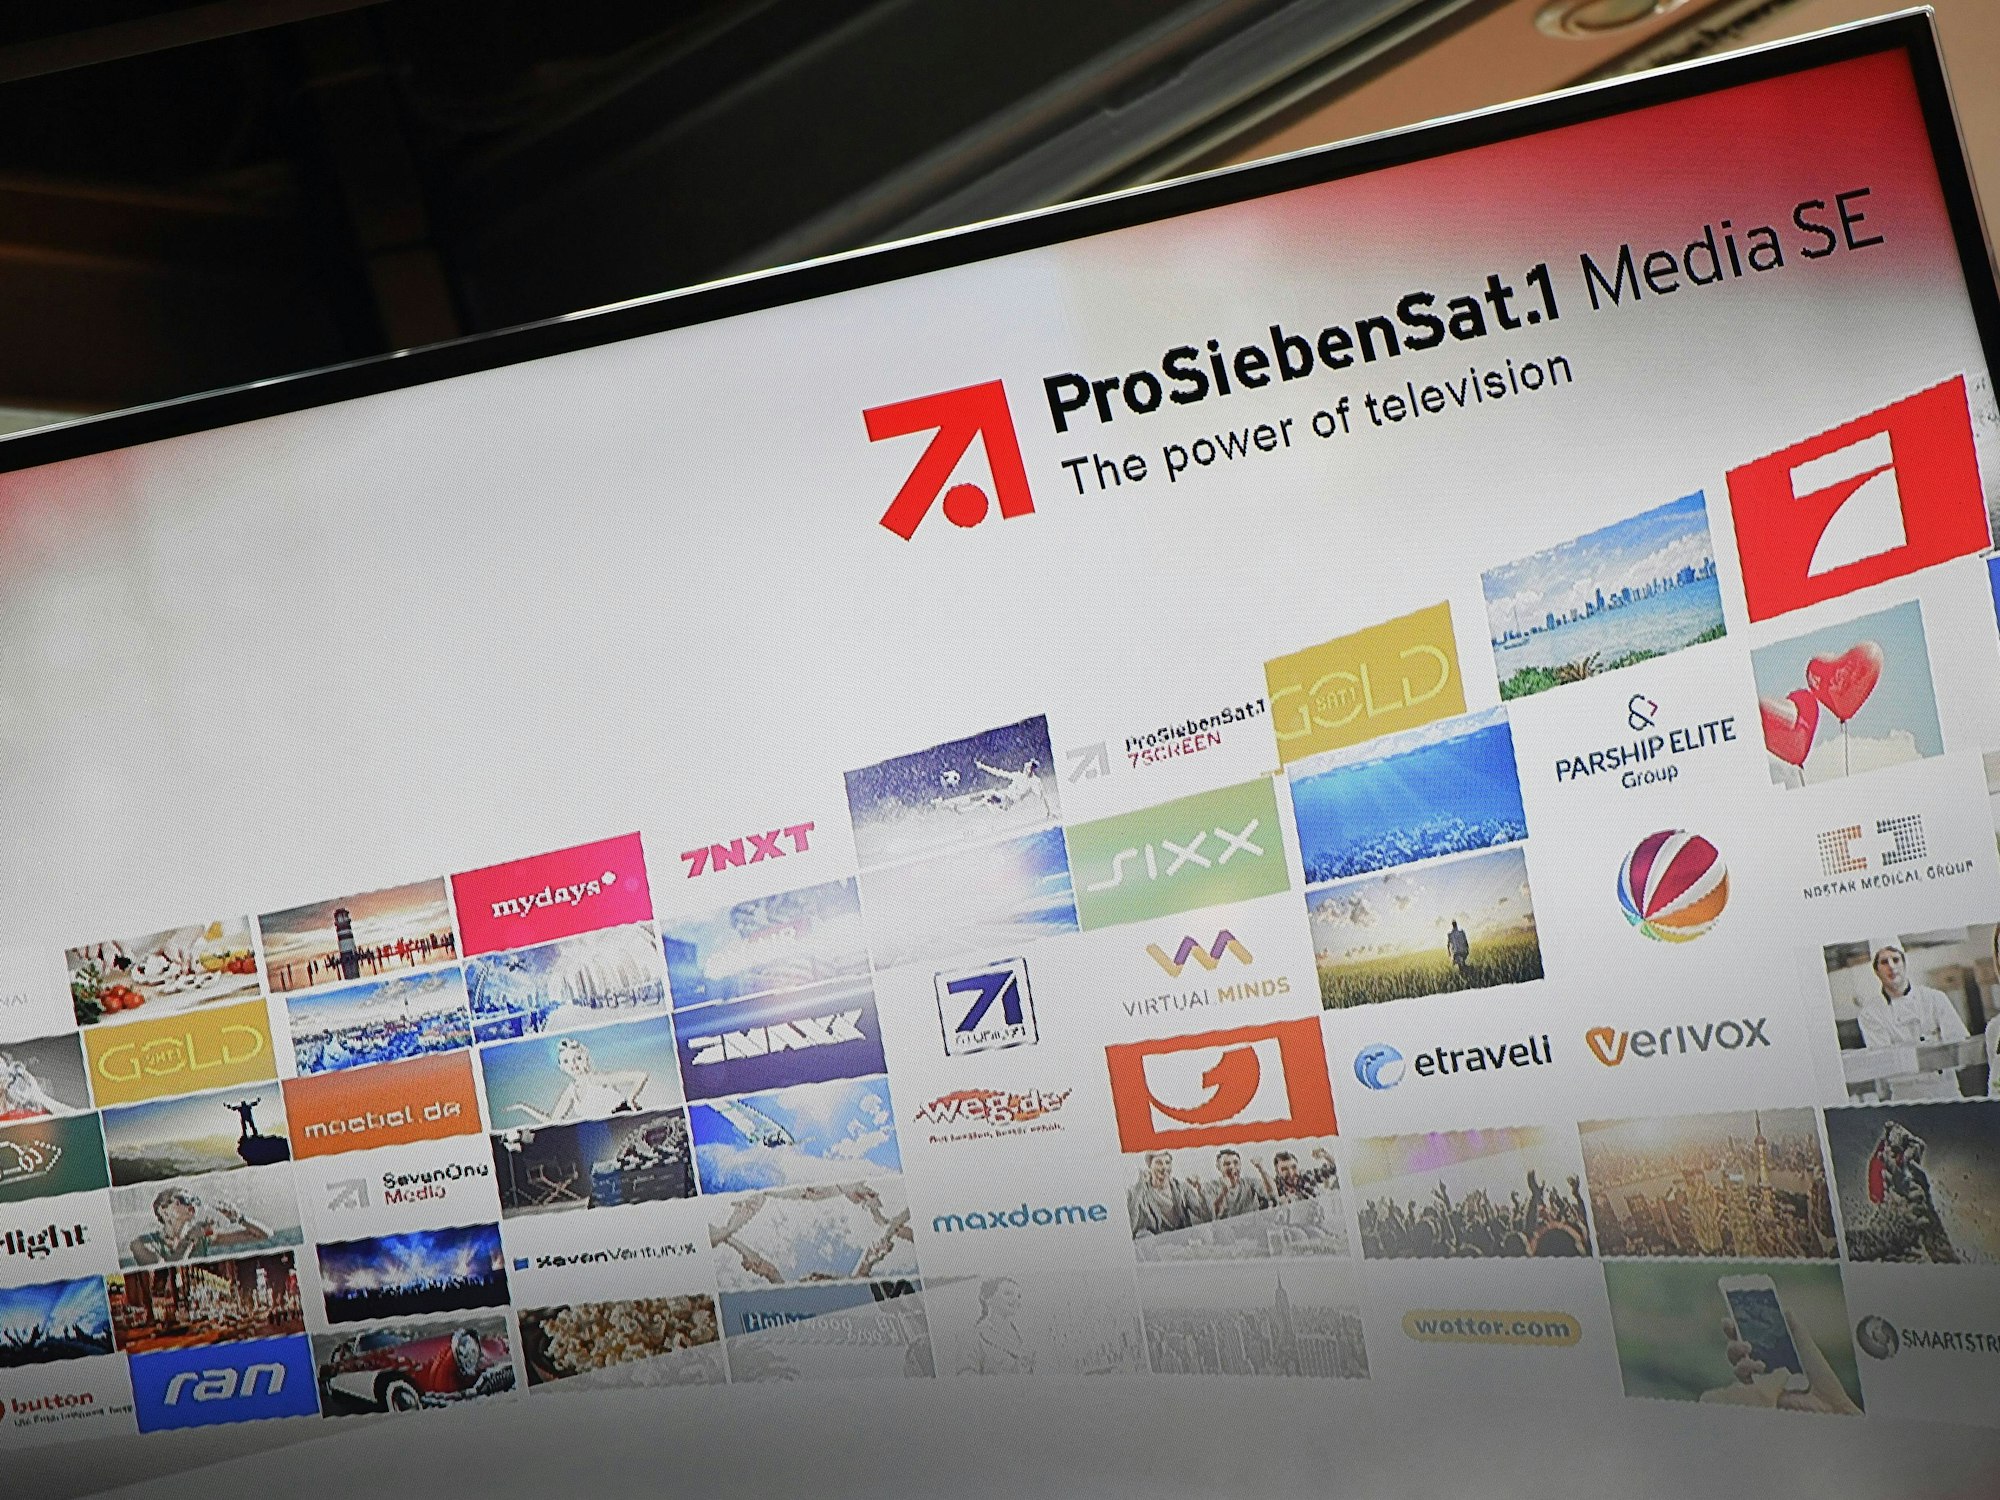 Monitor mit Logos der Senderfamilie ProSiebenSat.1 Media SE.